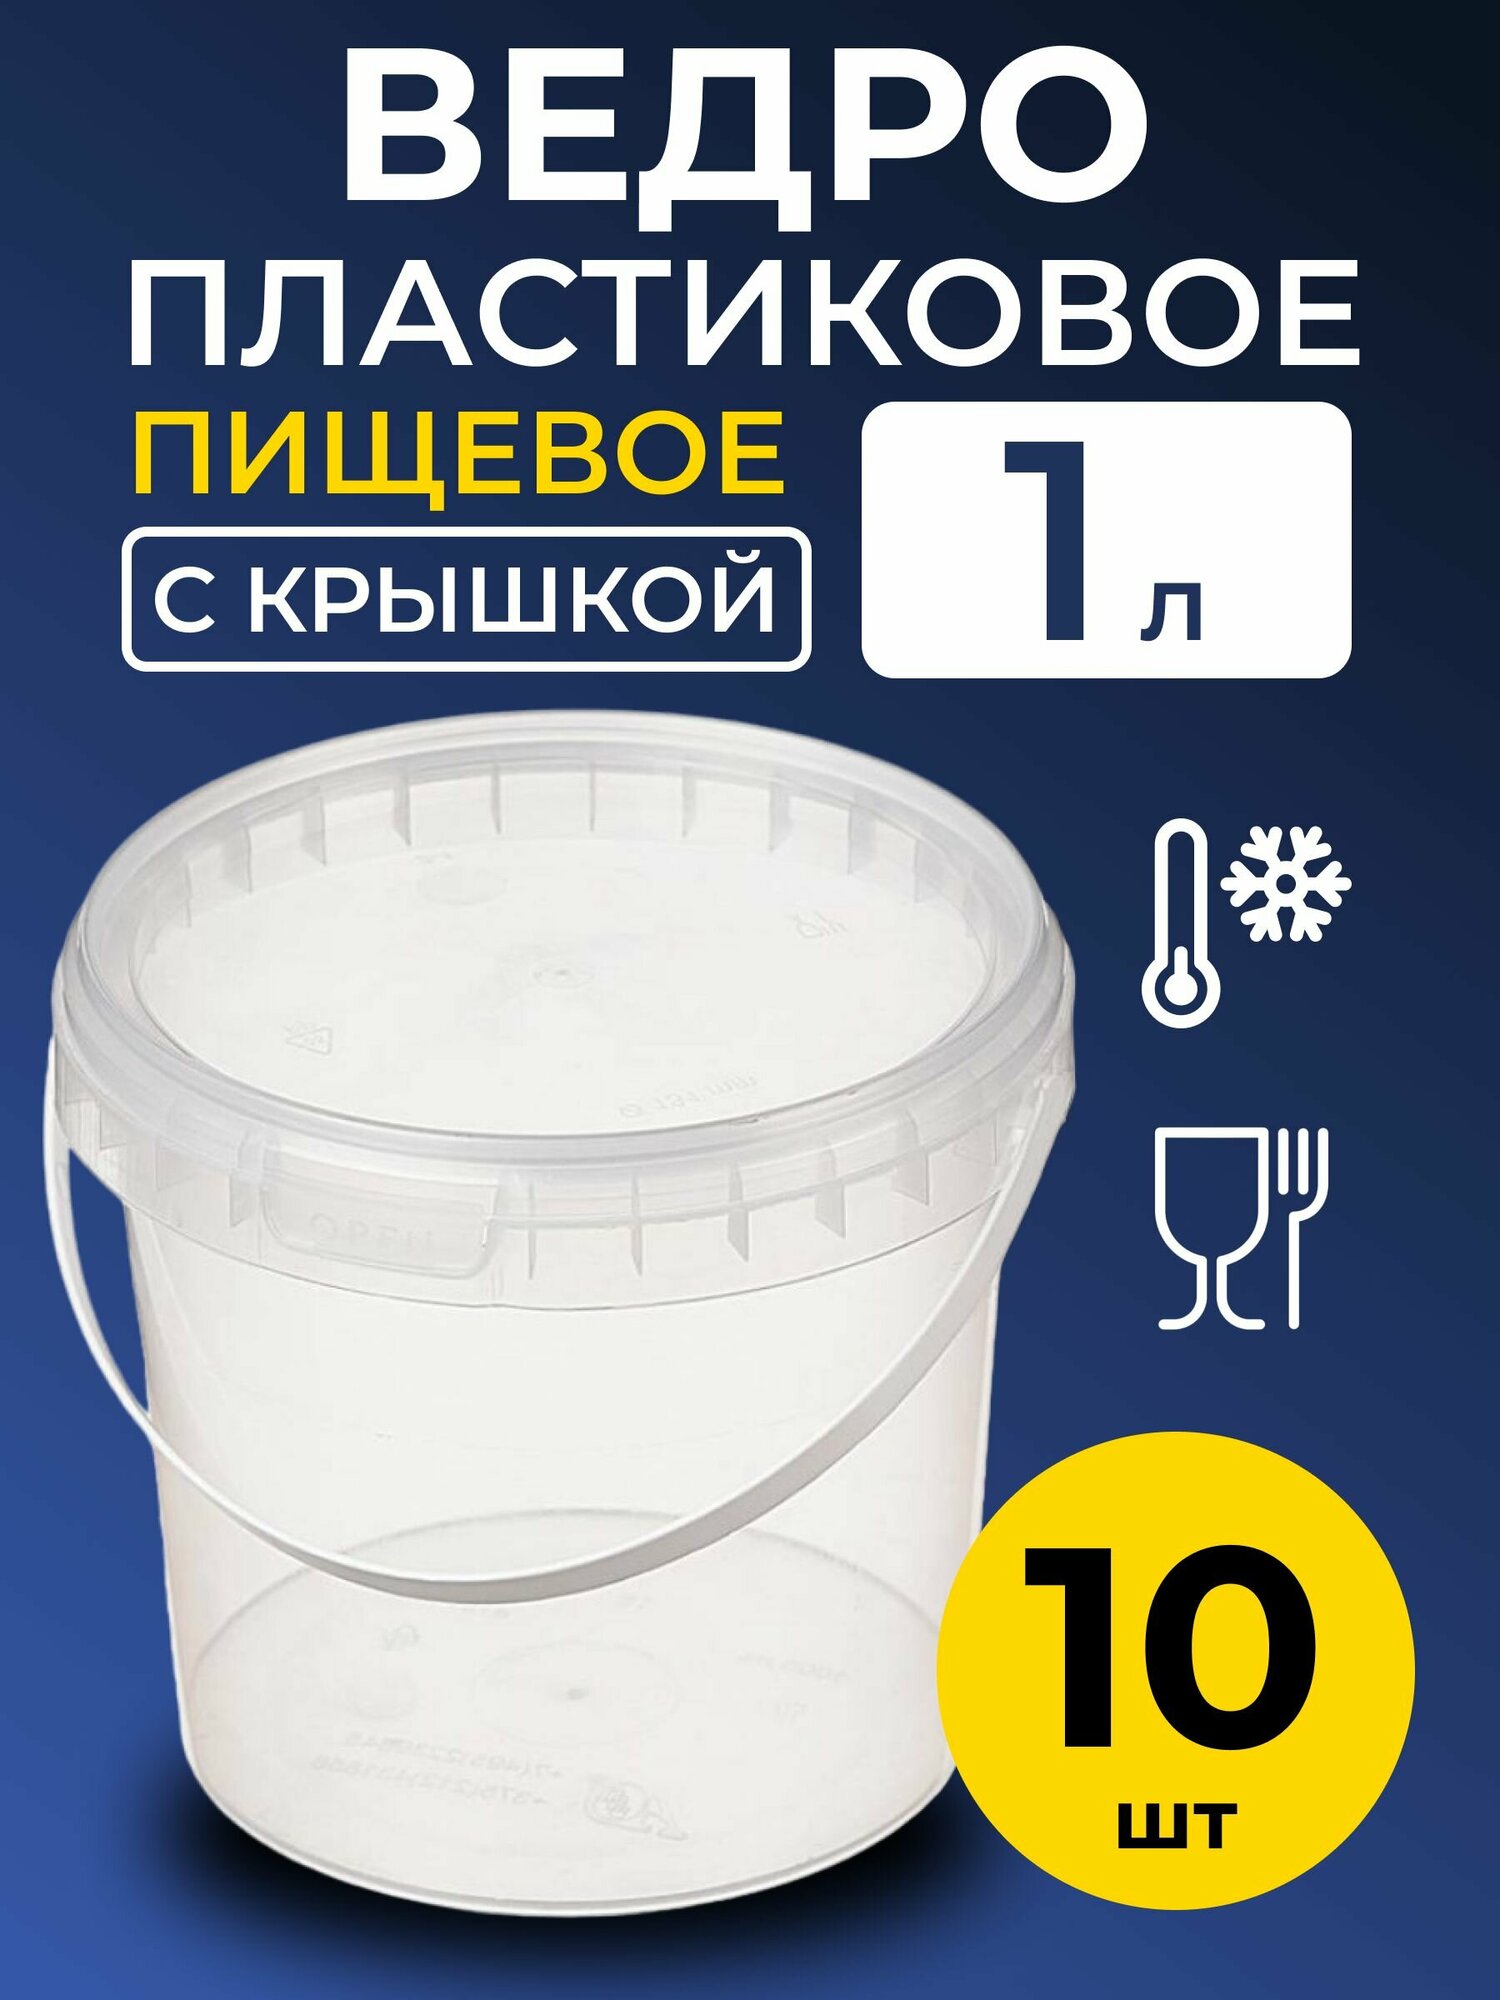 Ведро пластиковое пищевое с крышкой 1л (прозрачное), 10 шт.